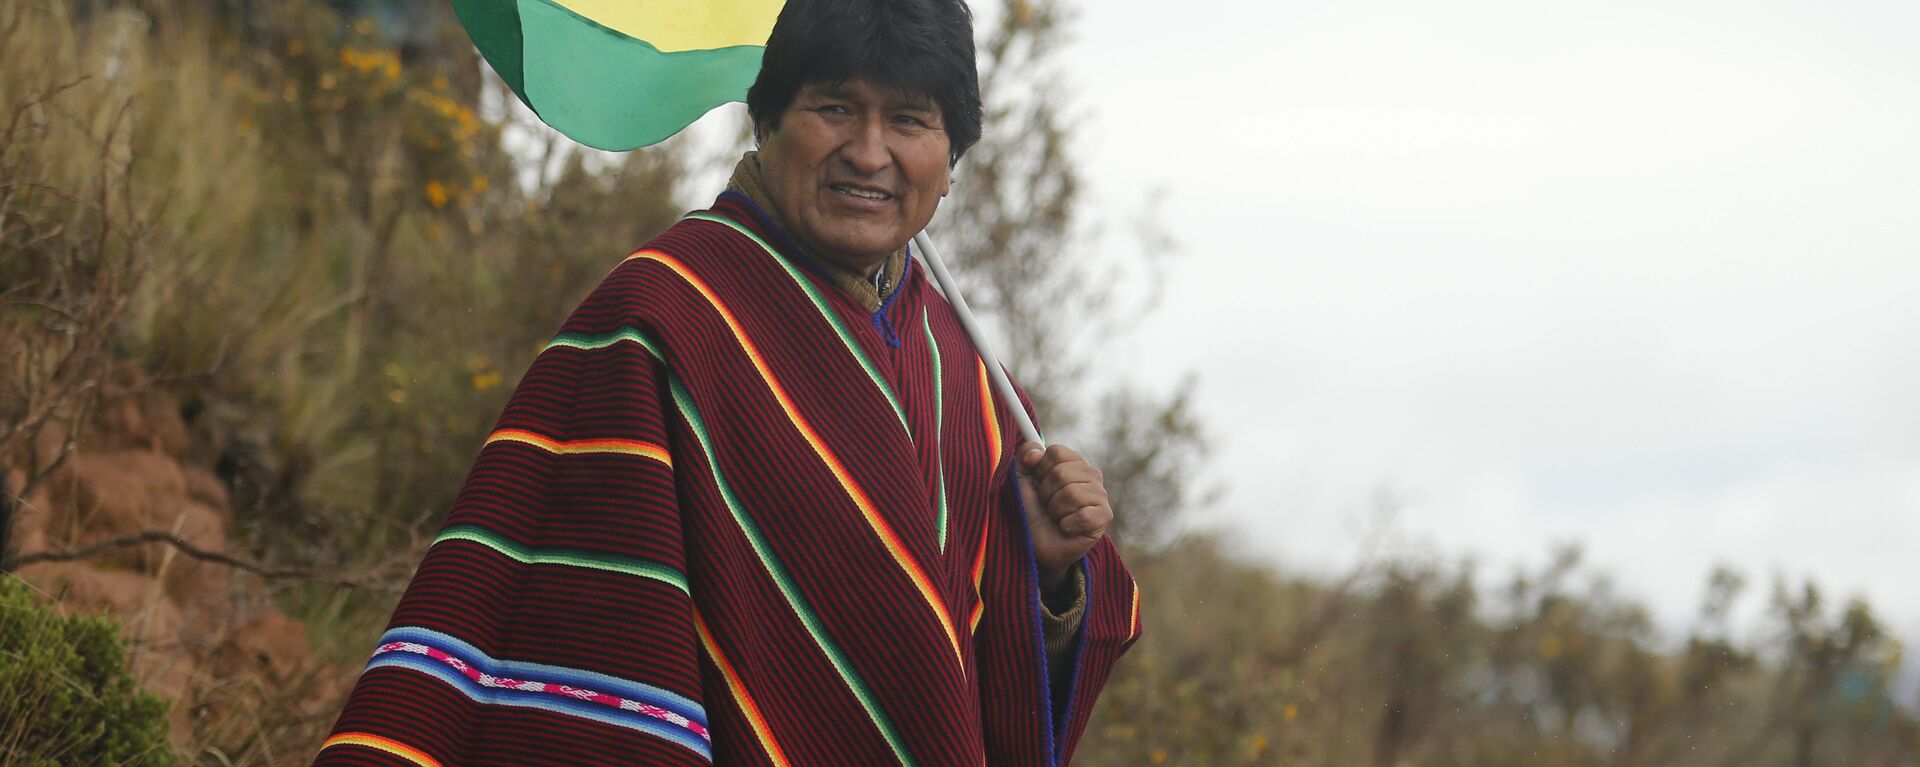 Evo Morales, expresidente de Bolivia - Sputnik Mundo, 1920, 26.07.2021